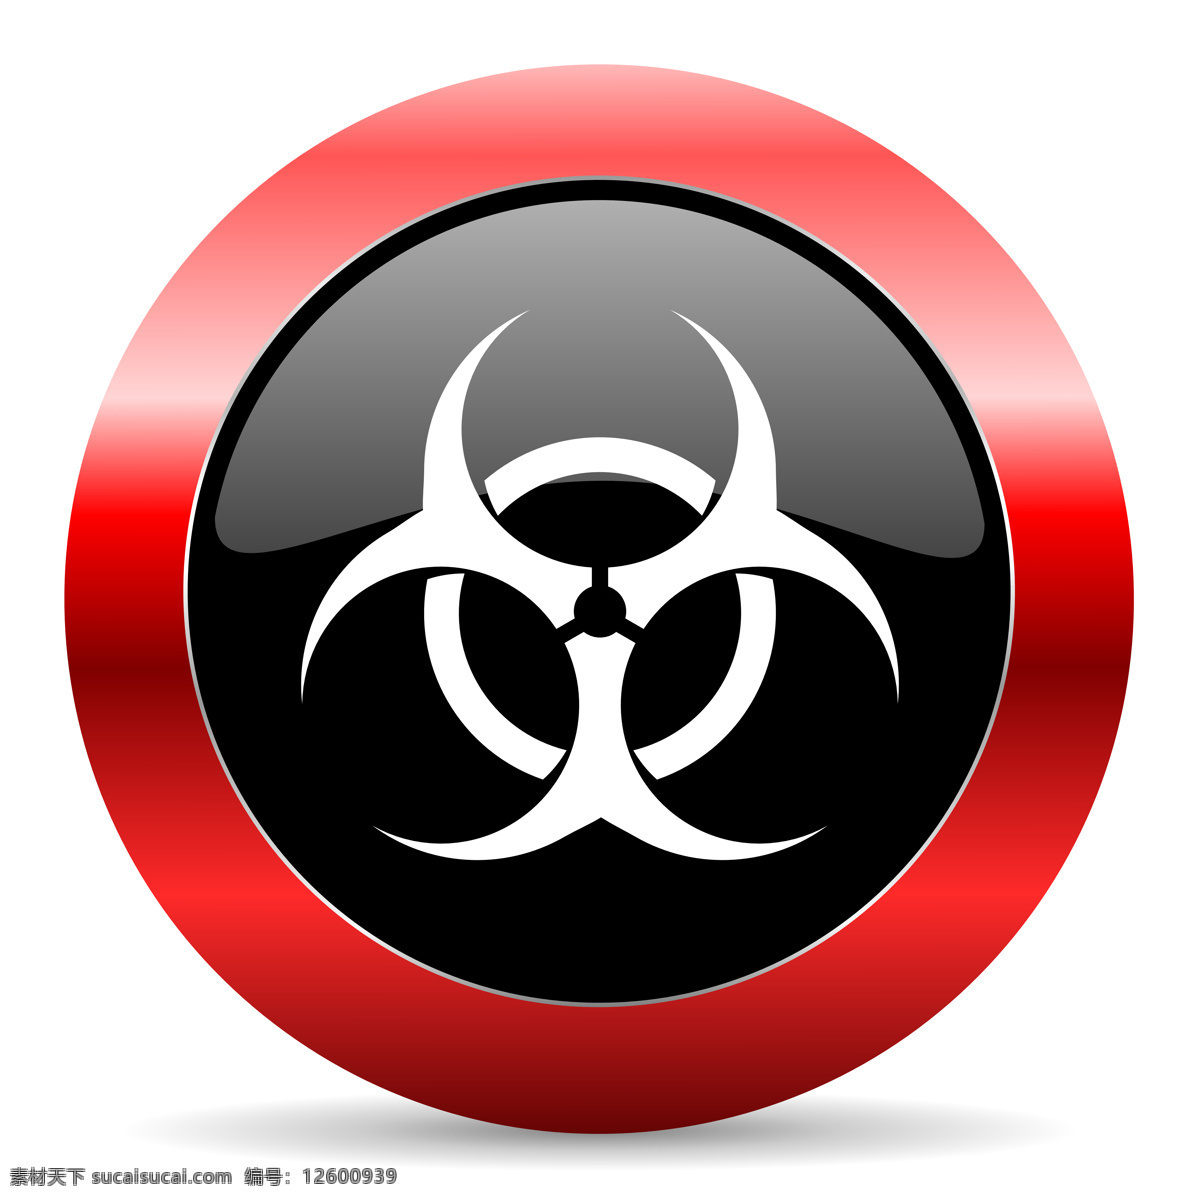 生化危险 危险物品 危险图标 危险标志 生化 生物科学 化学科学 防辐射 生化危险图标 公共标志 放射性 辐射 辐射图标 辐射标志 标志图标 公共标识标志